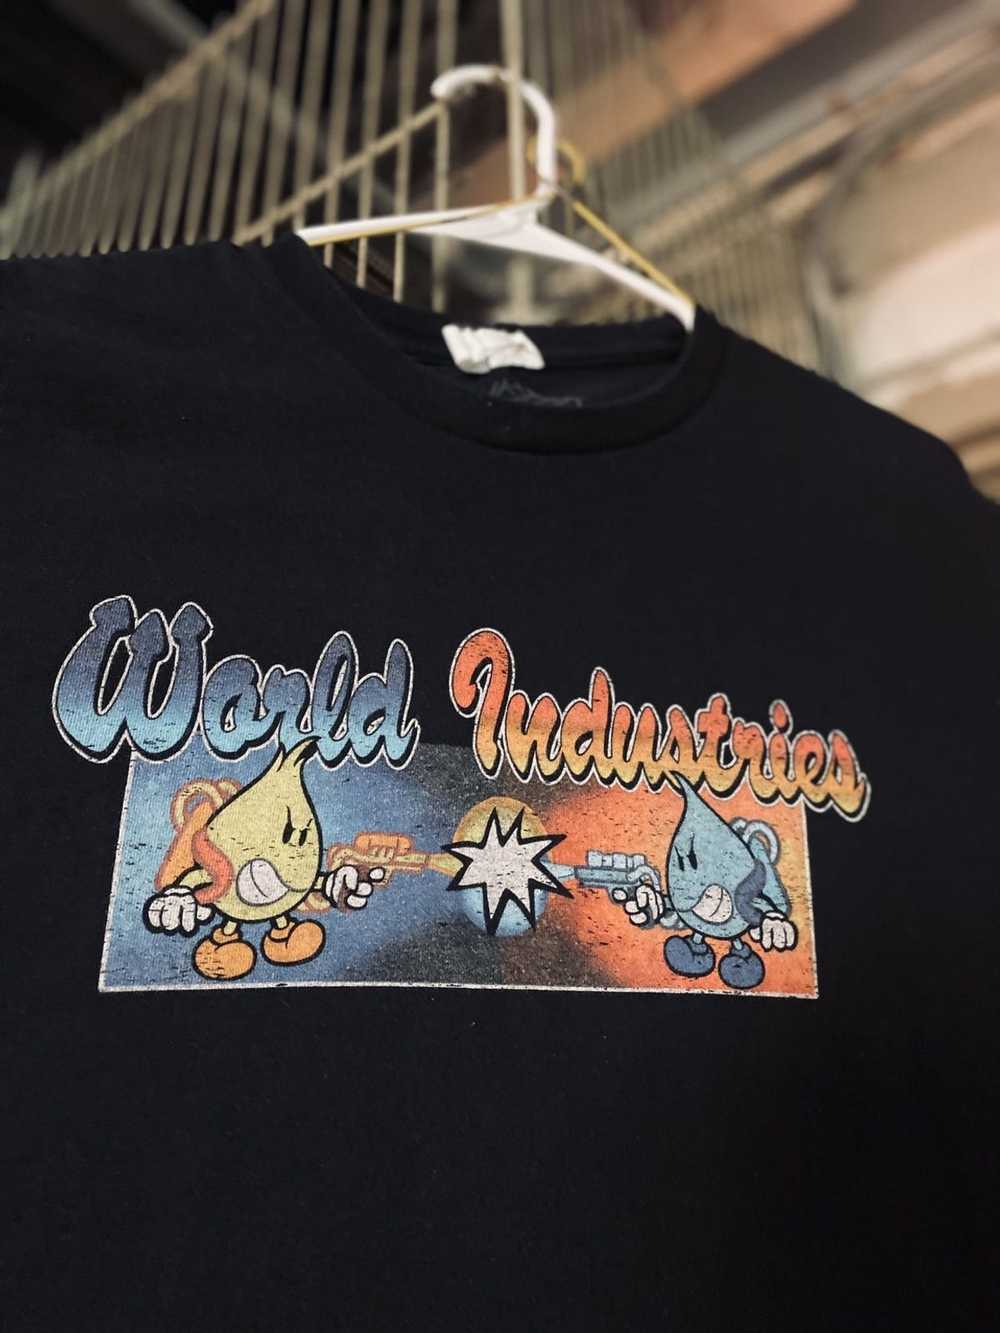 World industries t shirt - Gem